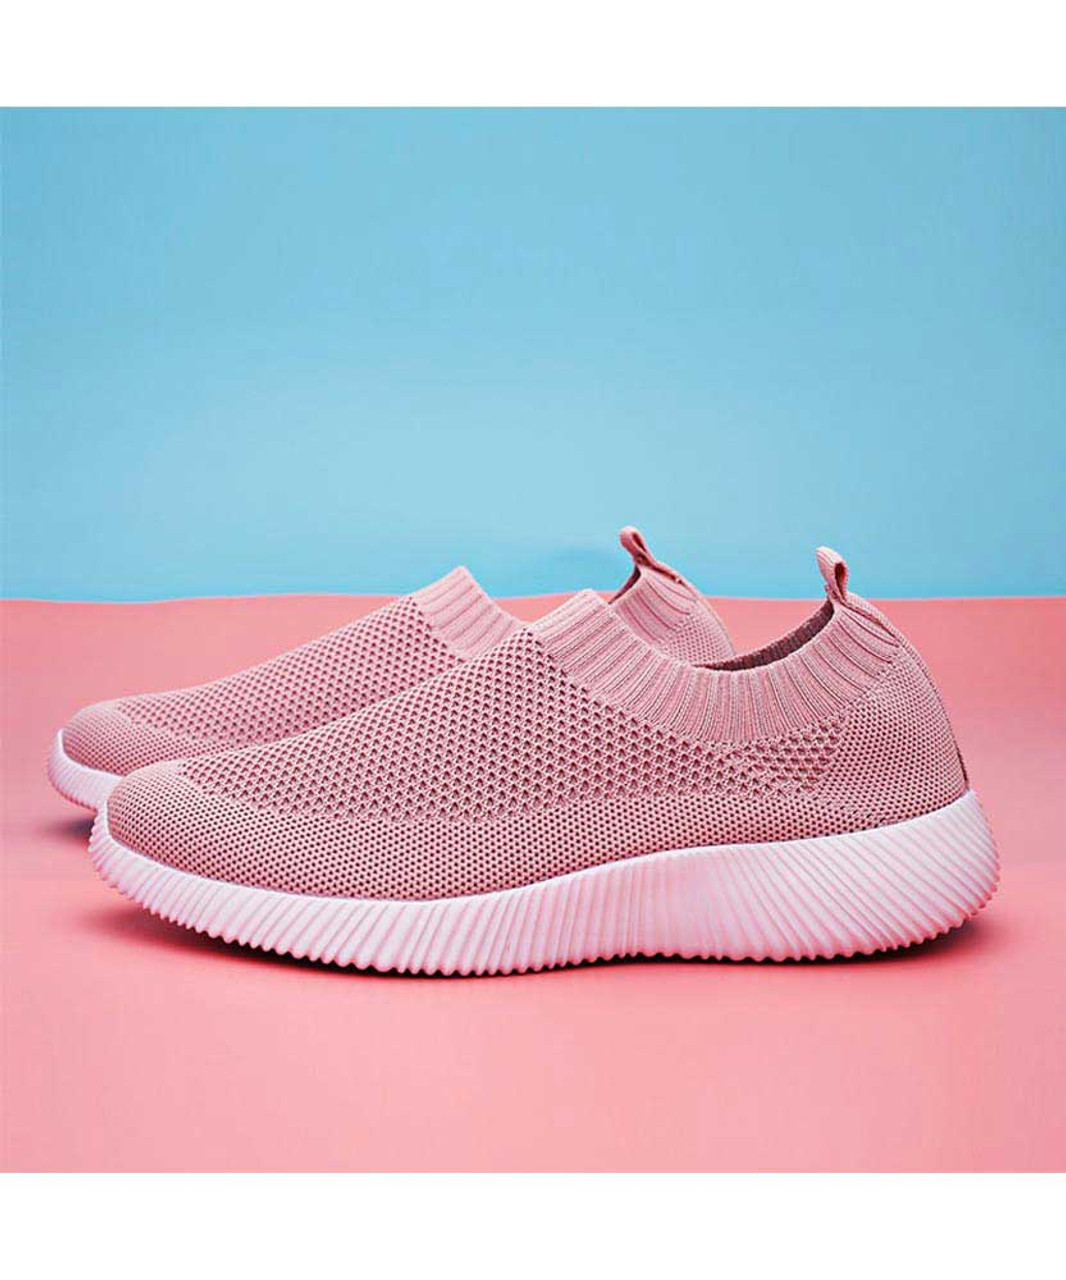 Pink casual flyknit plain slip on shoe sneaker | Womens sneakers shoes ...